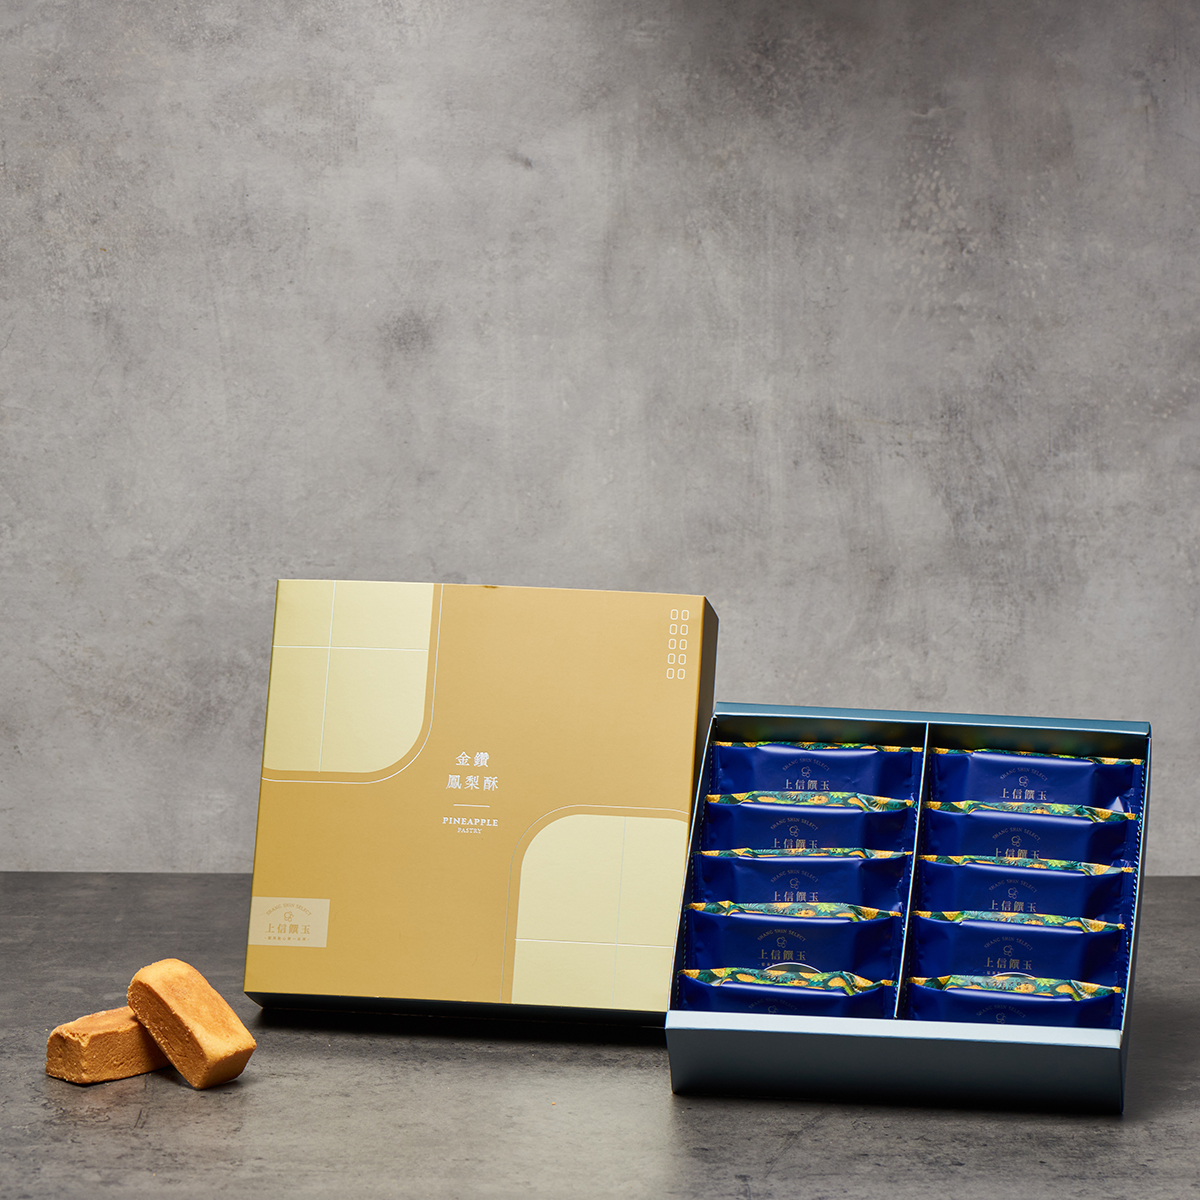 上信饌玉的金鑽鳳梨酥十入盒,盒蓋為黃色,鳳梨酥個別包裝且包裝袋為藍色""